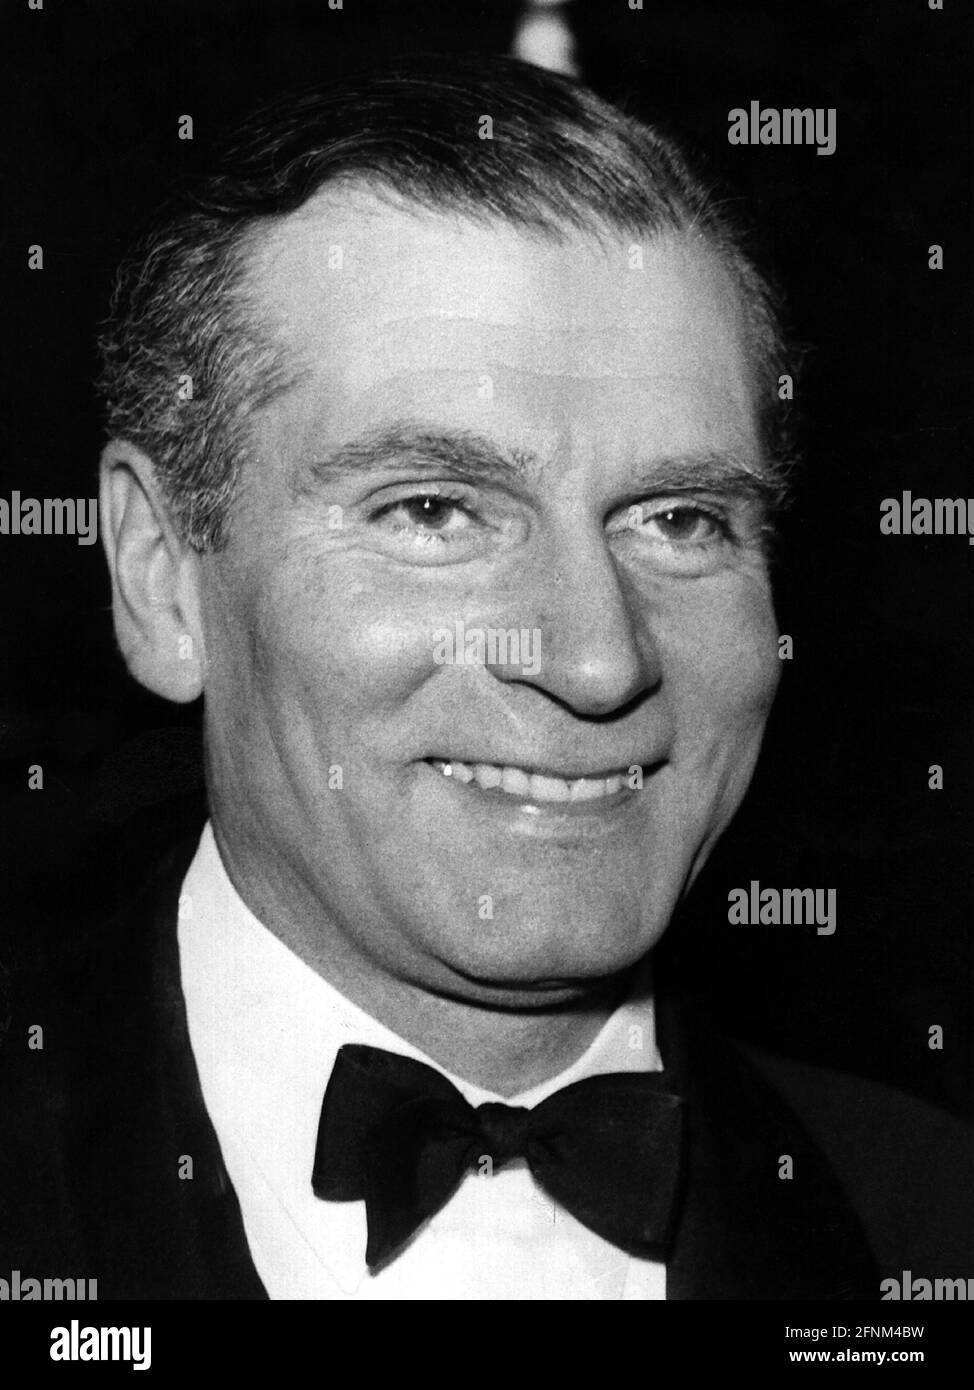 Olivier, Laurence Sir, 22.5.1907 - 11,7.1989, actor británico, retrato, 1950s, pajarita, DERECHOS-ADICIONALES-LIQUIDACIÓN-INFO-NO-DISPONIBLE Foto de stock